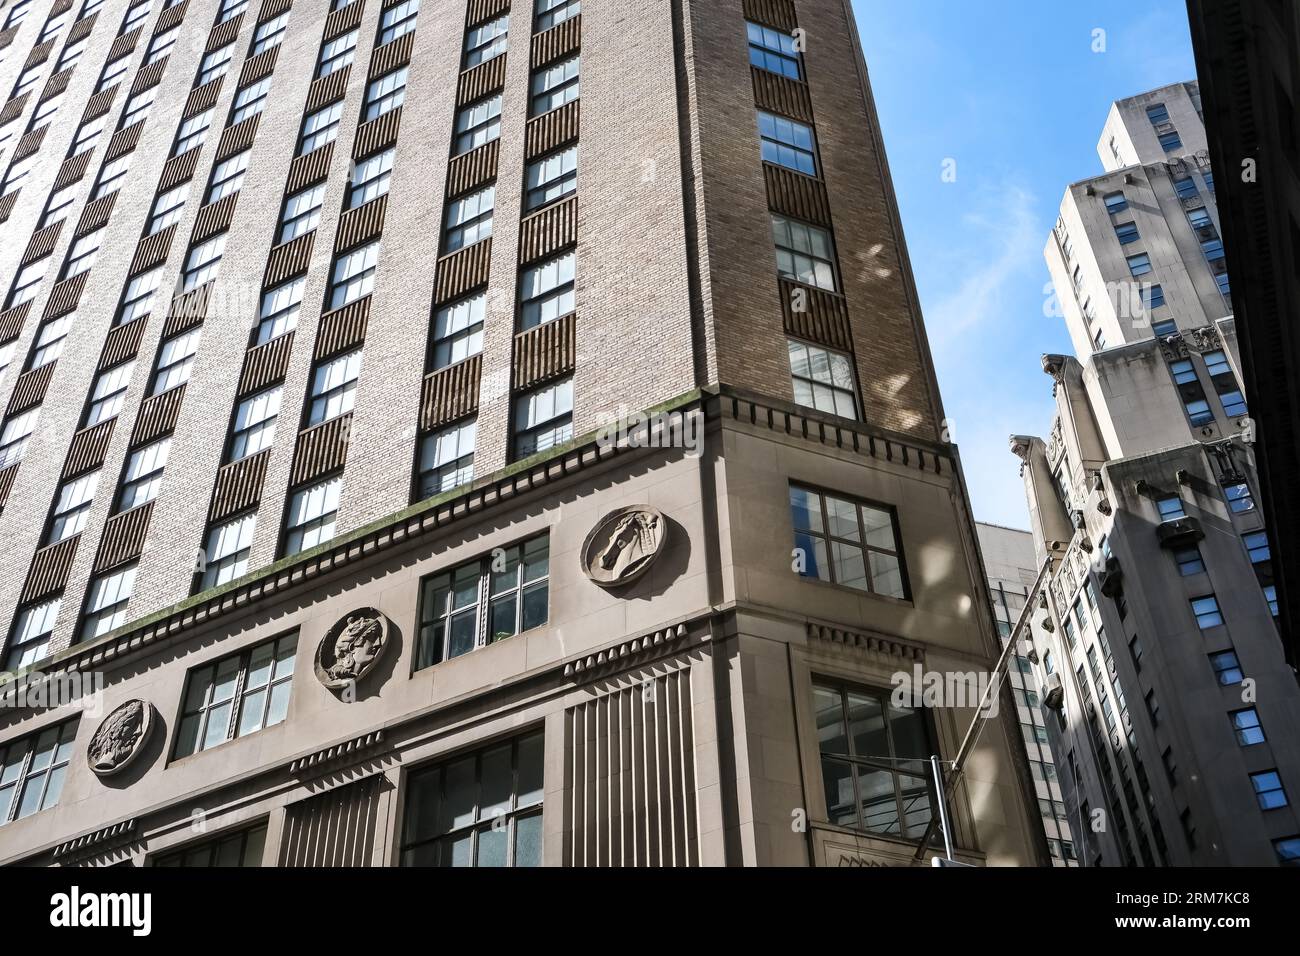 Détail architectural de l'intersection de Hanover Street et Wall Street dans le quartier financier de Lower Manhattan à New York, États-Unis Banque D'Images